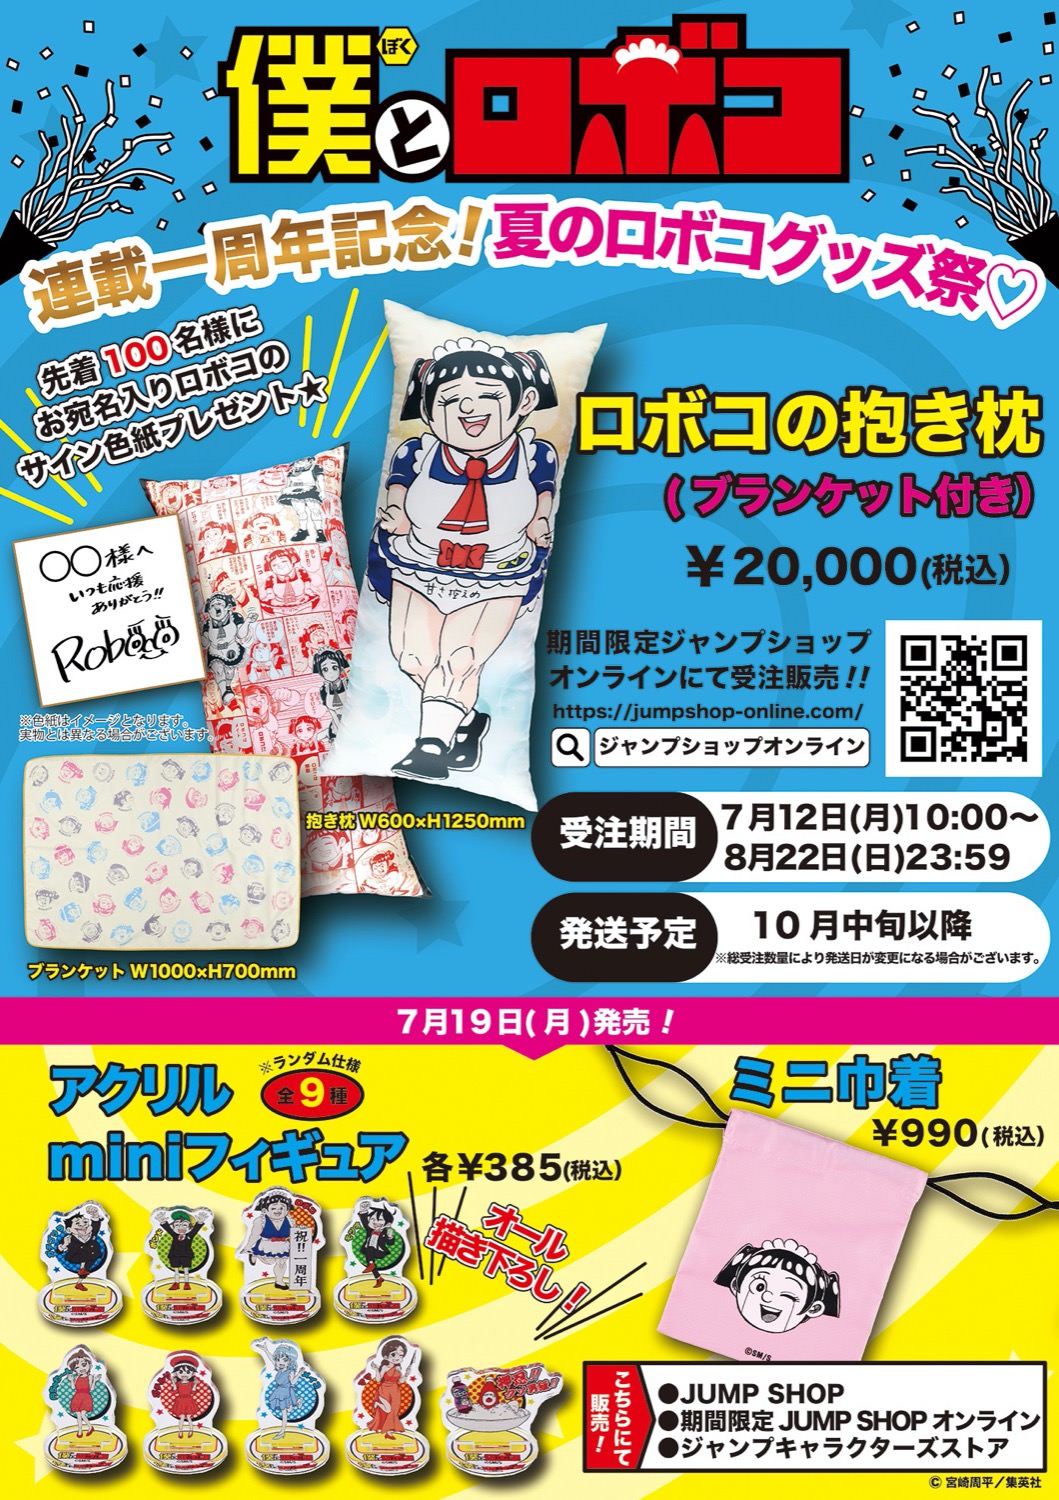 ジャンプショップ Jヒーロー夏祭り21 7月19日より夏の新商品発売